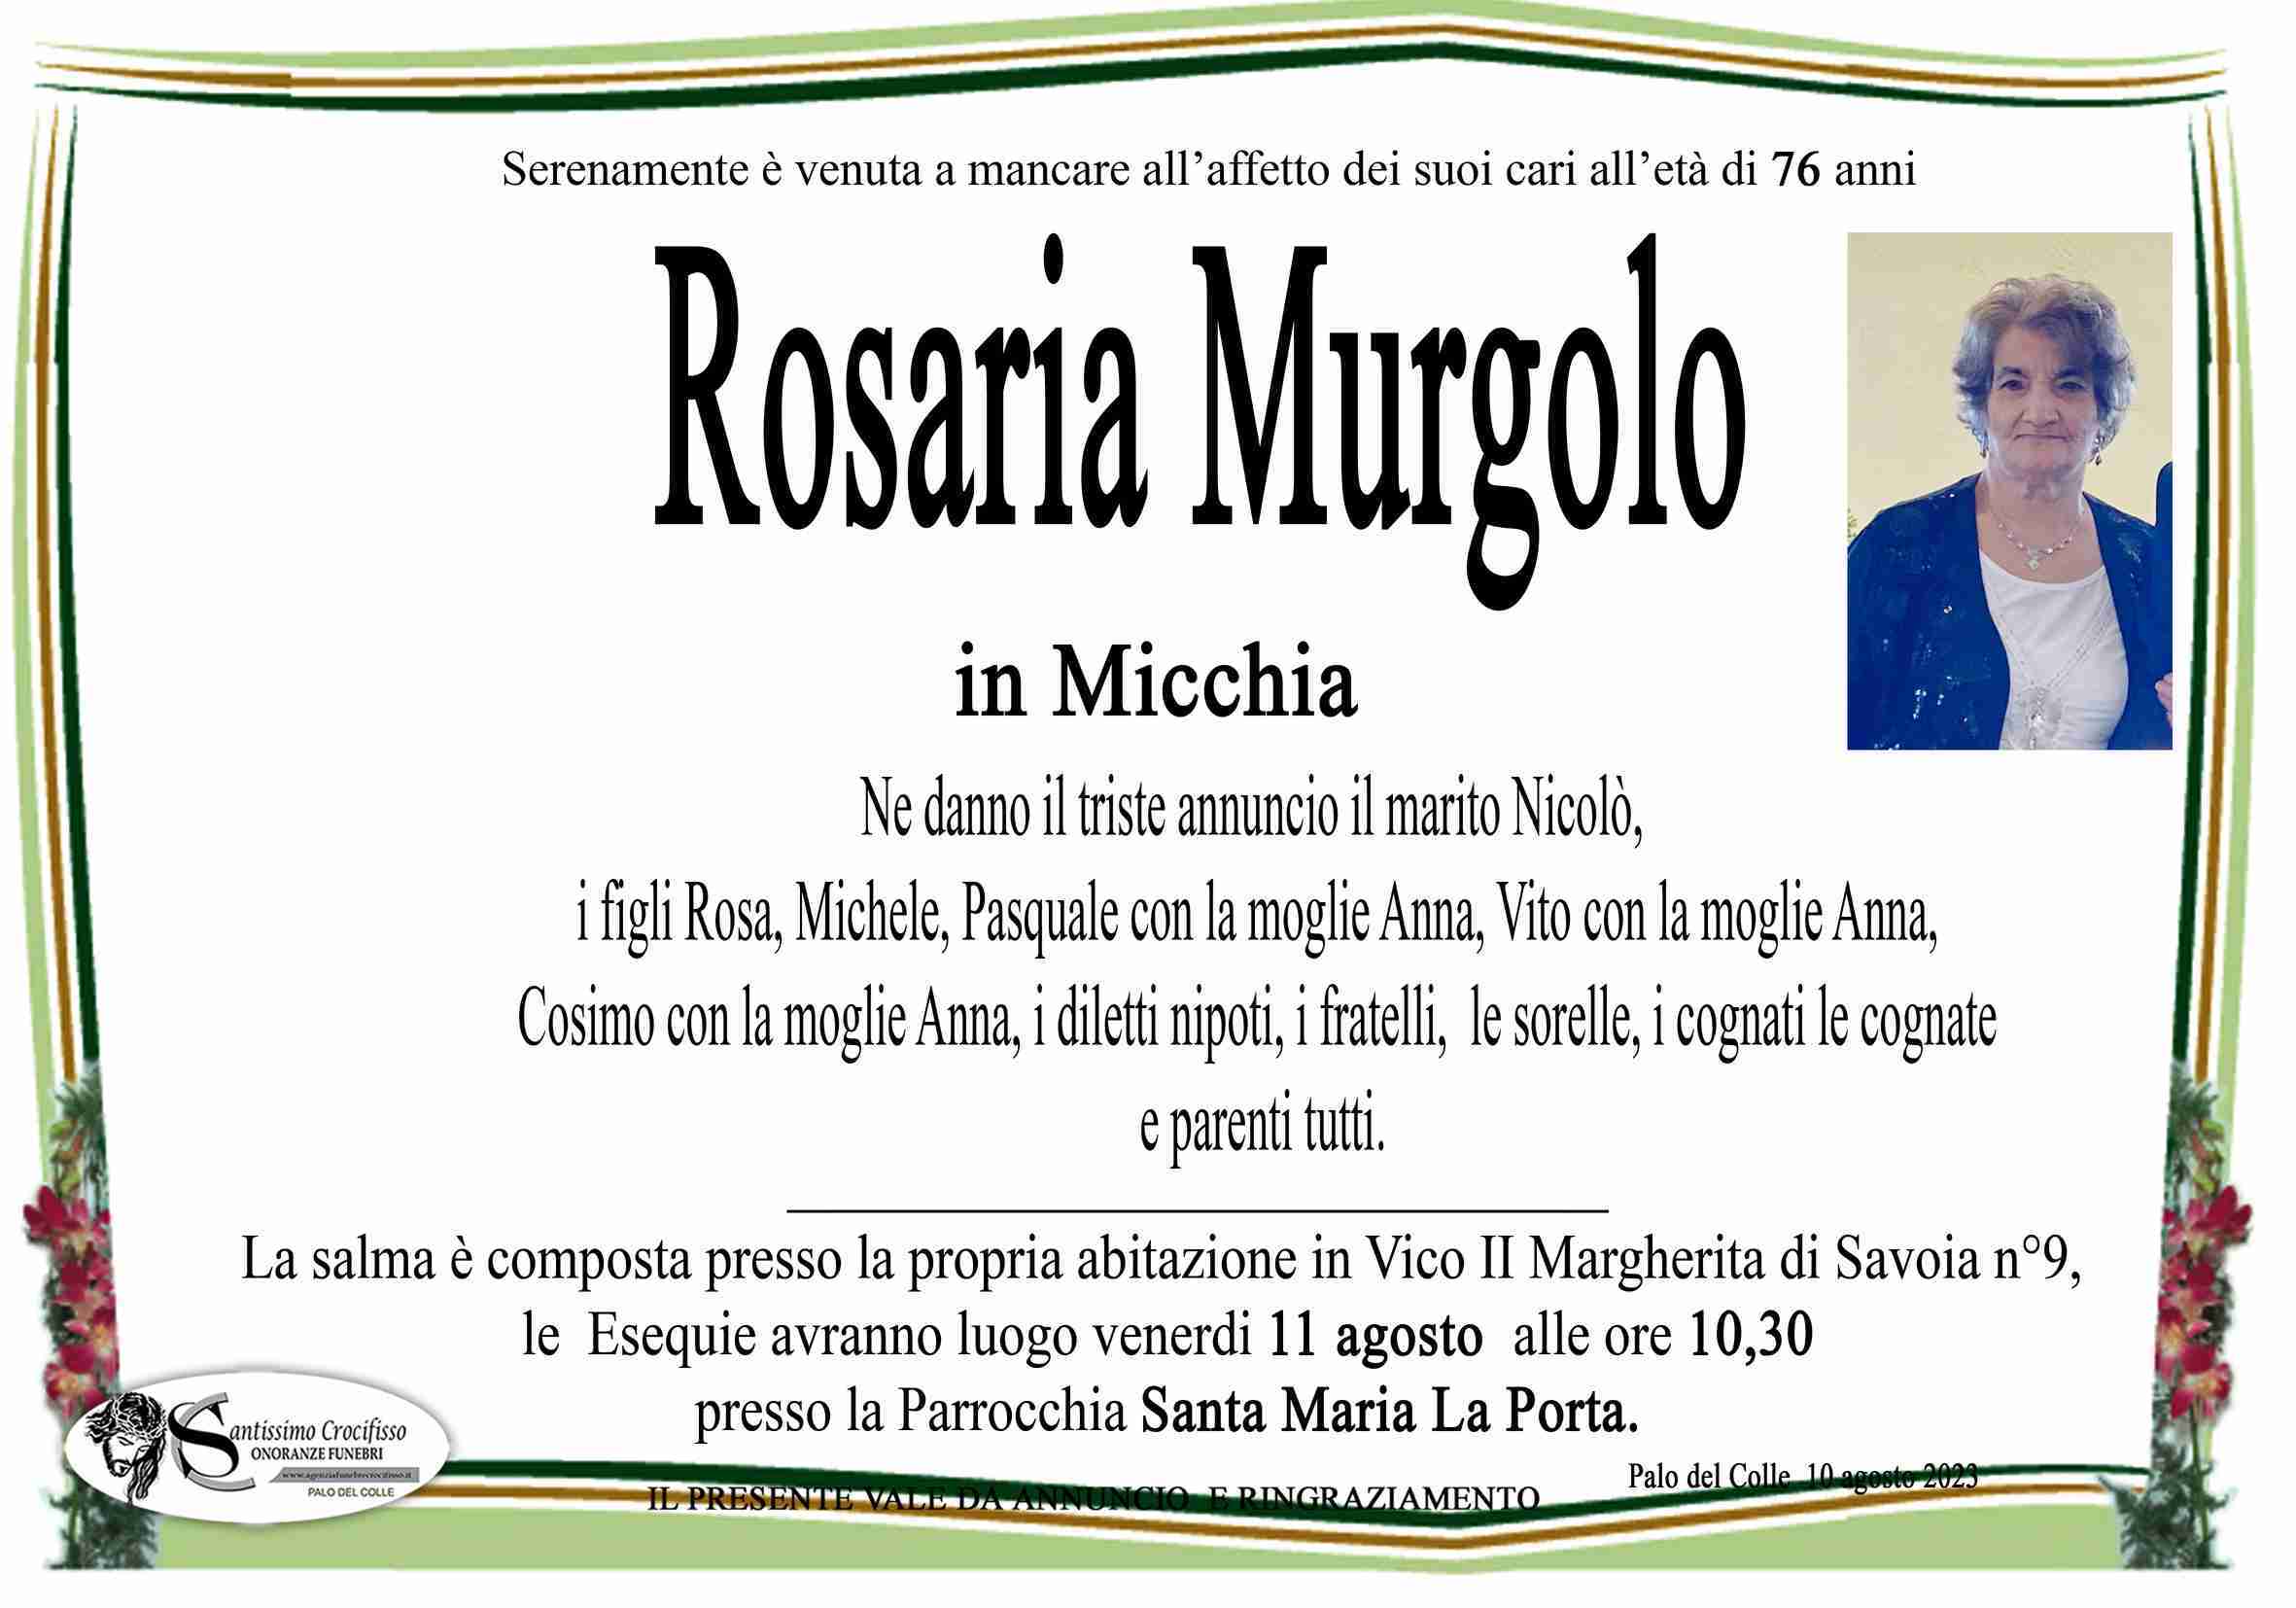 Rosaria Murgolo